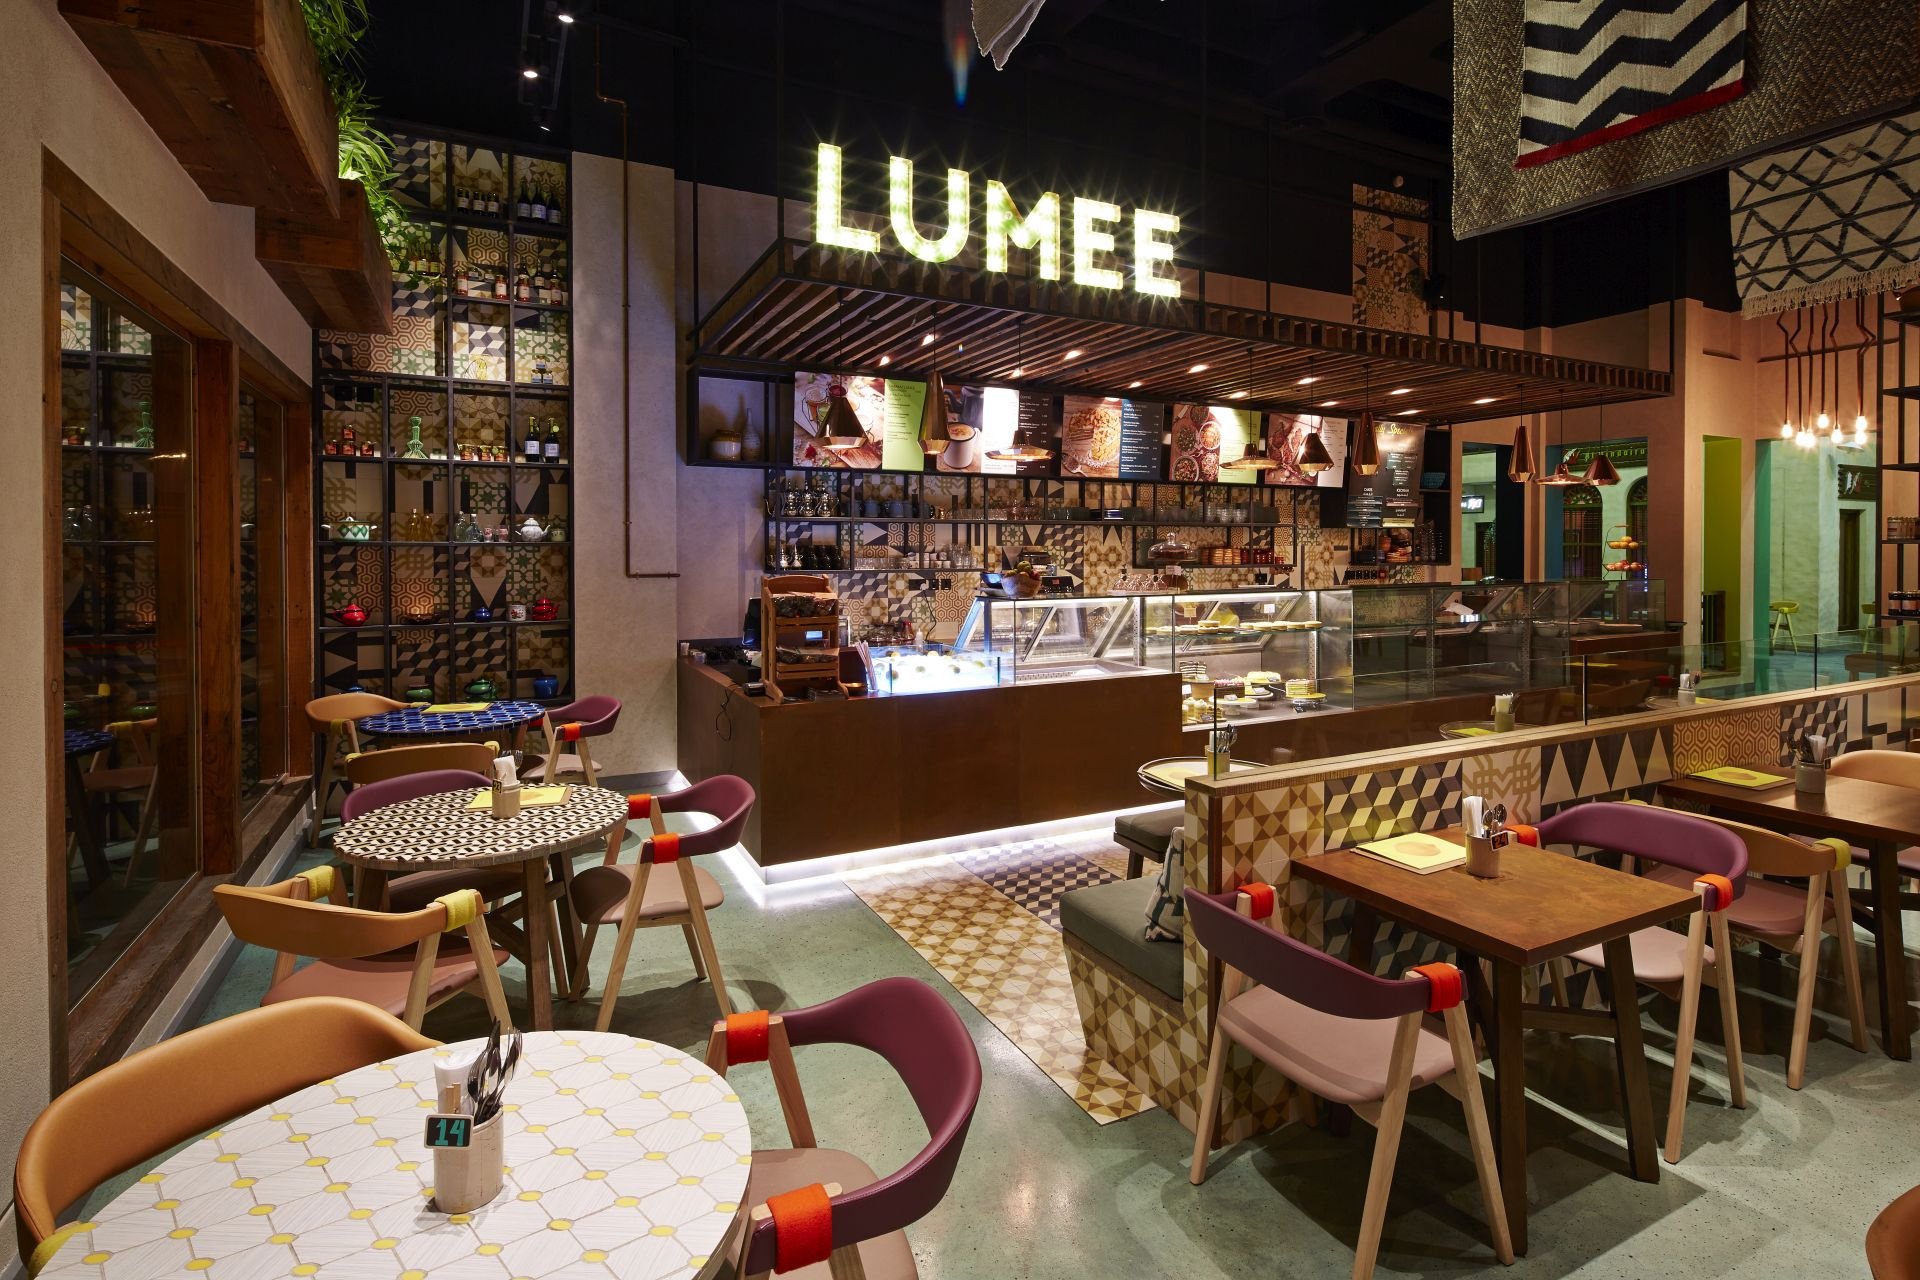 Love That Design Lumee Cafe Bahrain 01 